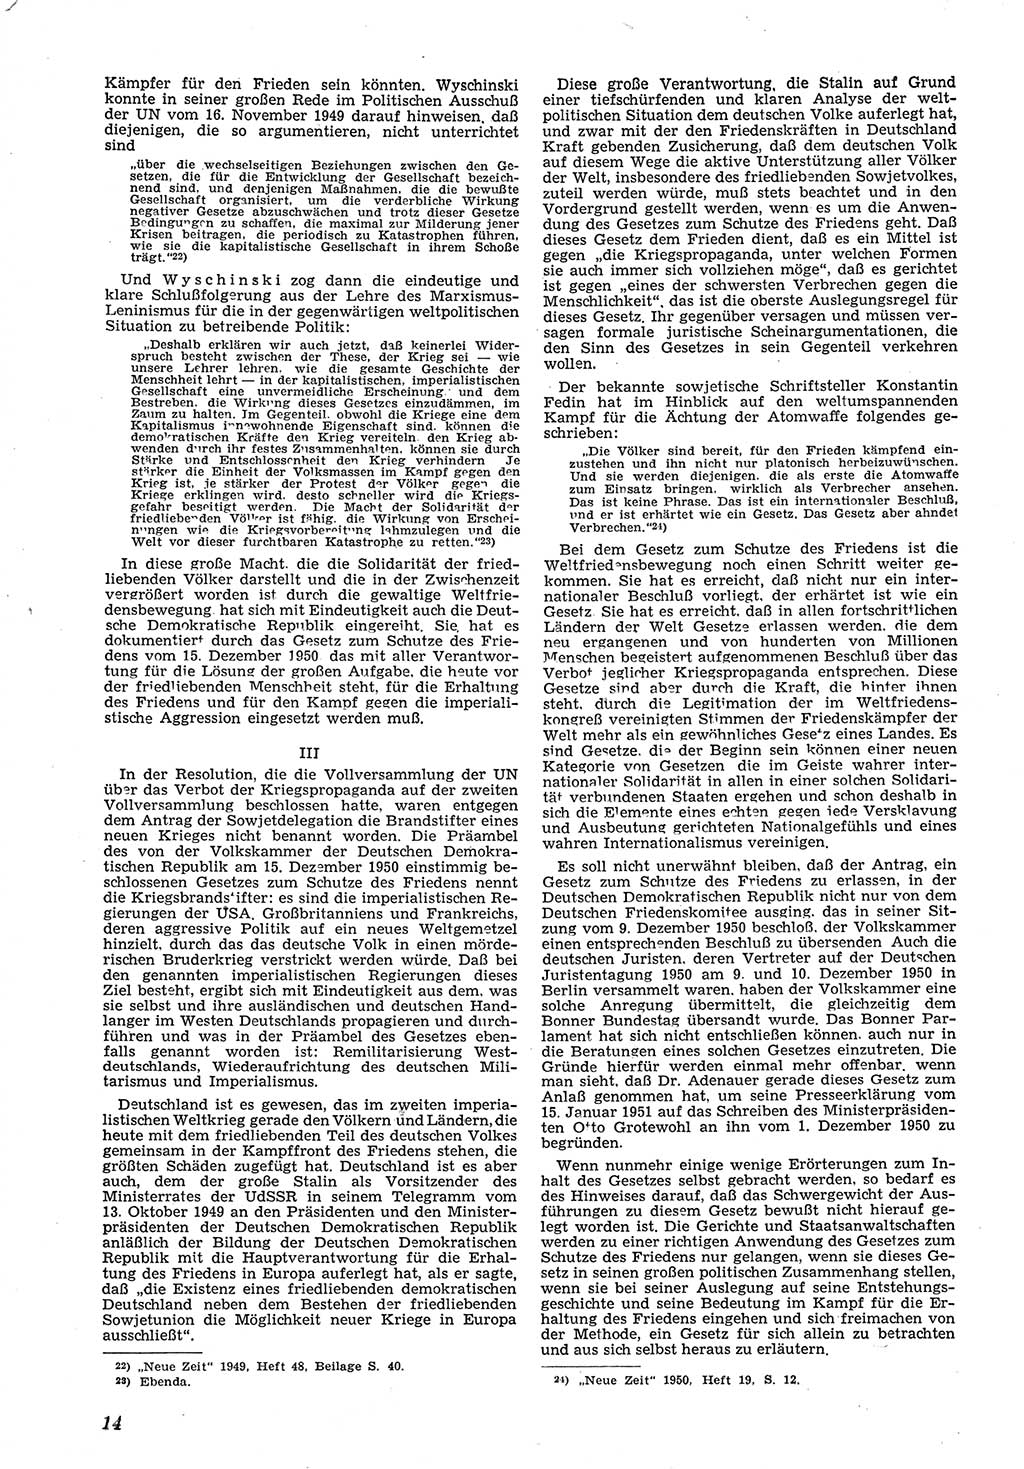 Neue Justiz (NJ), Zeitschrift für Recht und Rechtswissenschaft [Deutsche Demokratische Republik (DDR)], 5. Jahrgang 1951, Seite 14 (NJ DDR 1951, S. 14)